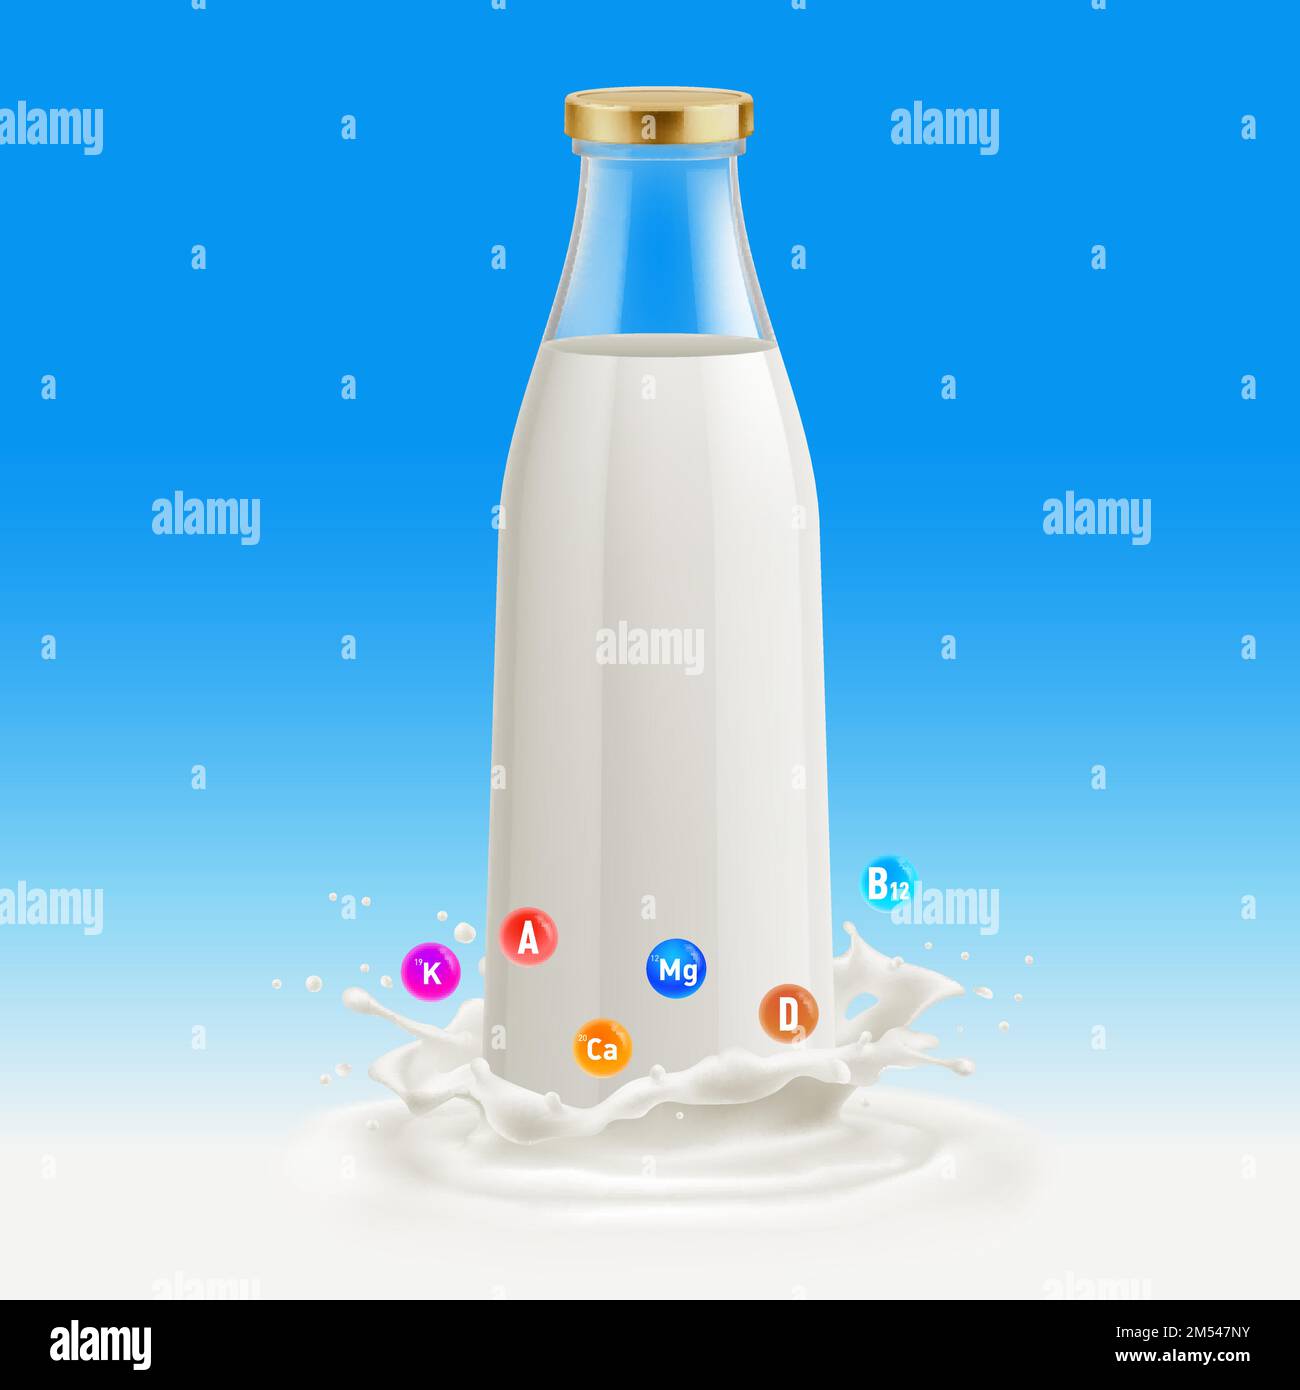 Botella de leche aislada sobre fondo azul. Botella de vidrio con leche. Tradicional botella de leche de vidrio de estilo antiguo. Útil y Vitaminas Plantilla con Splash Ilustración del Vector